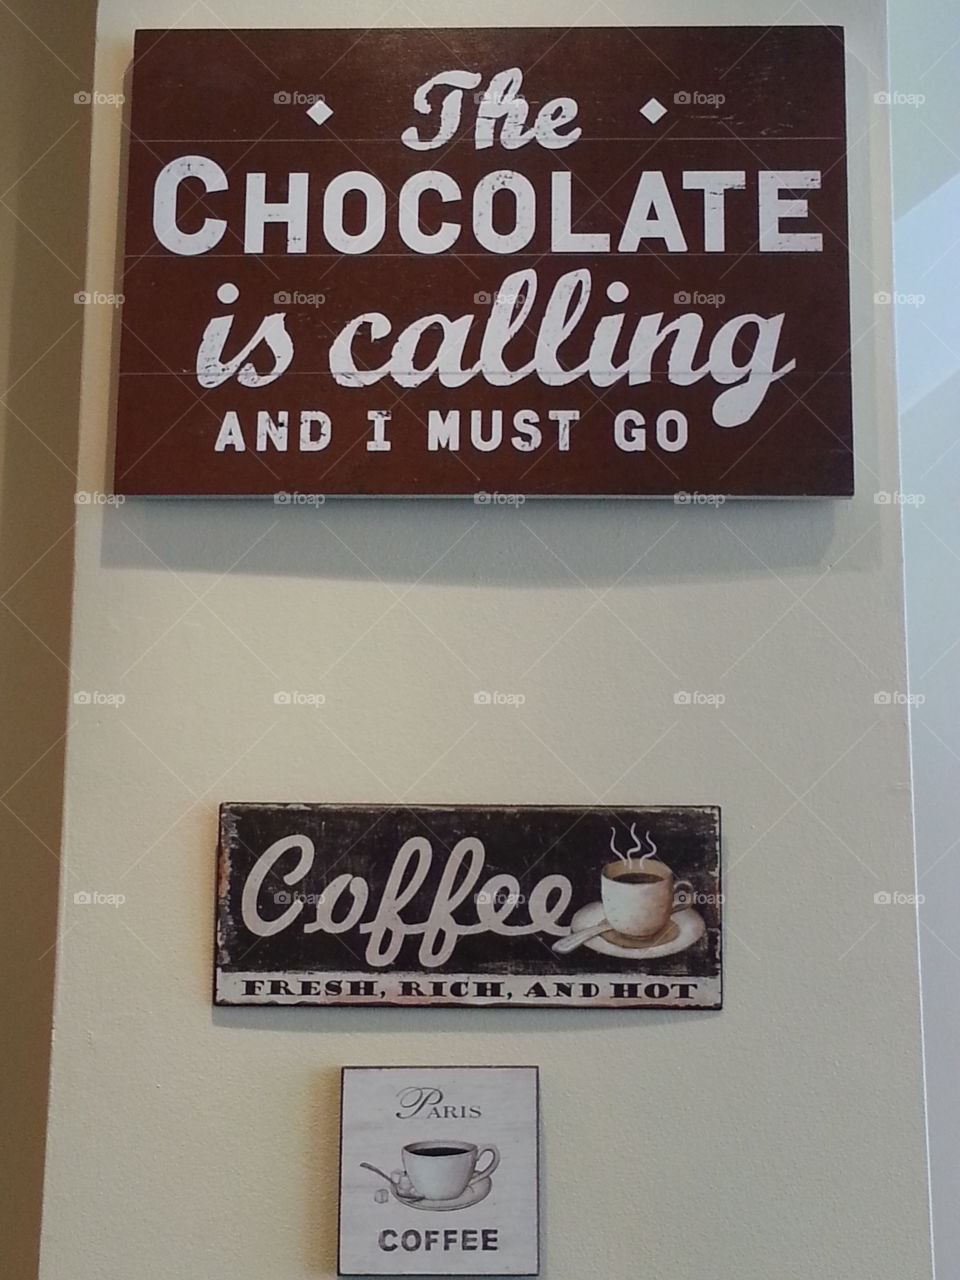 Chocolate & Coffee saying